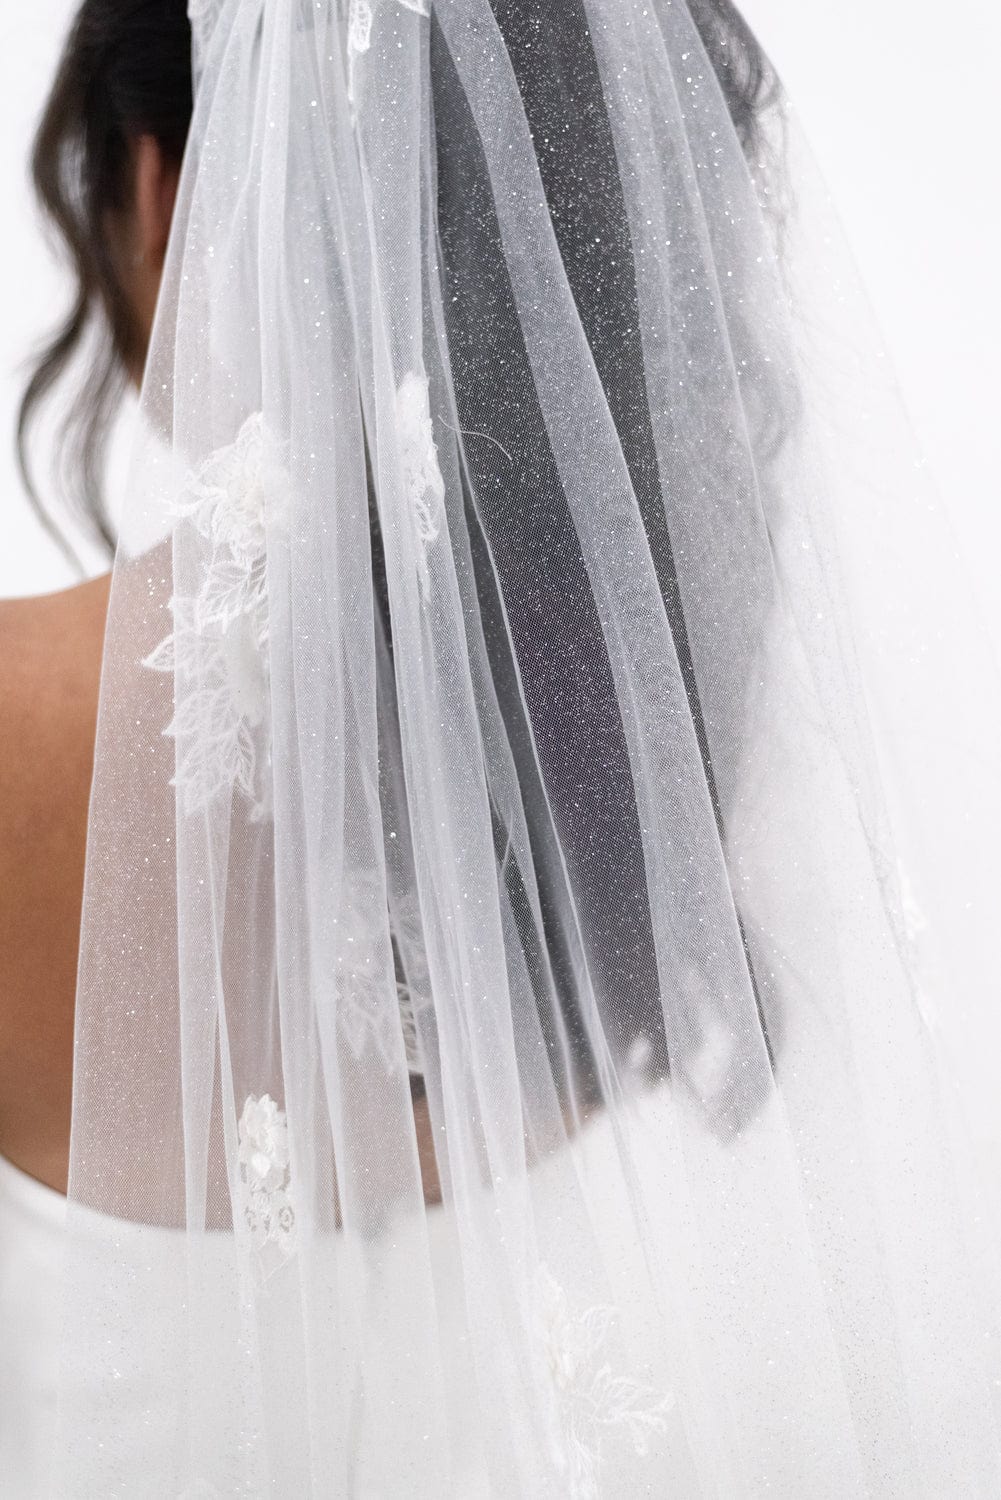 Chic Bridals Bridal Veils Devora Veil Wedding Gowns